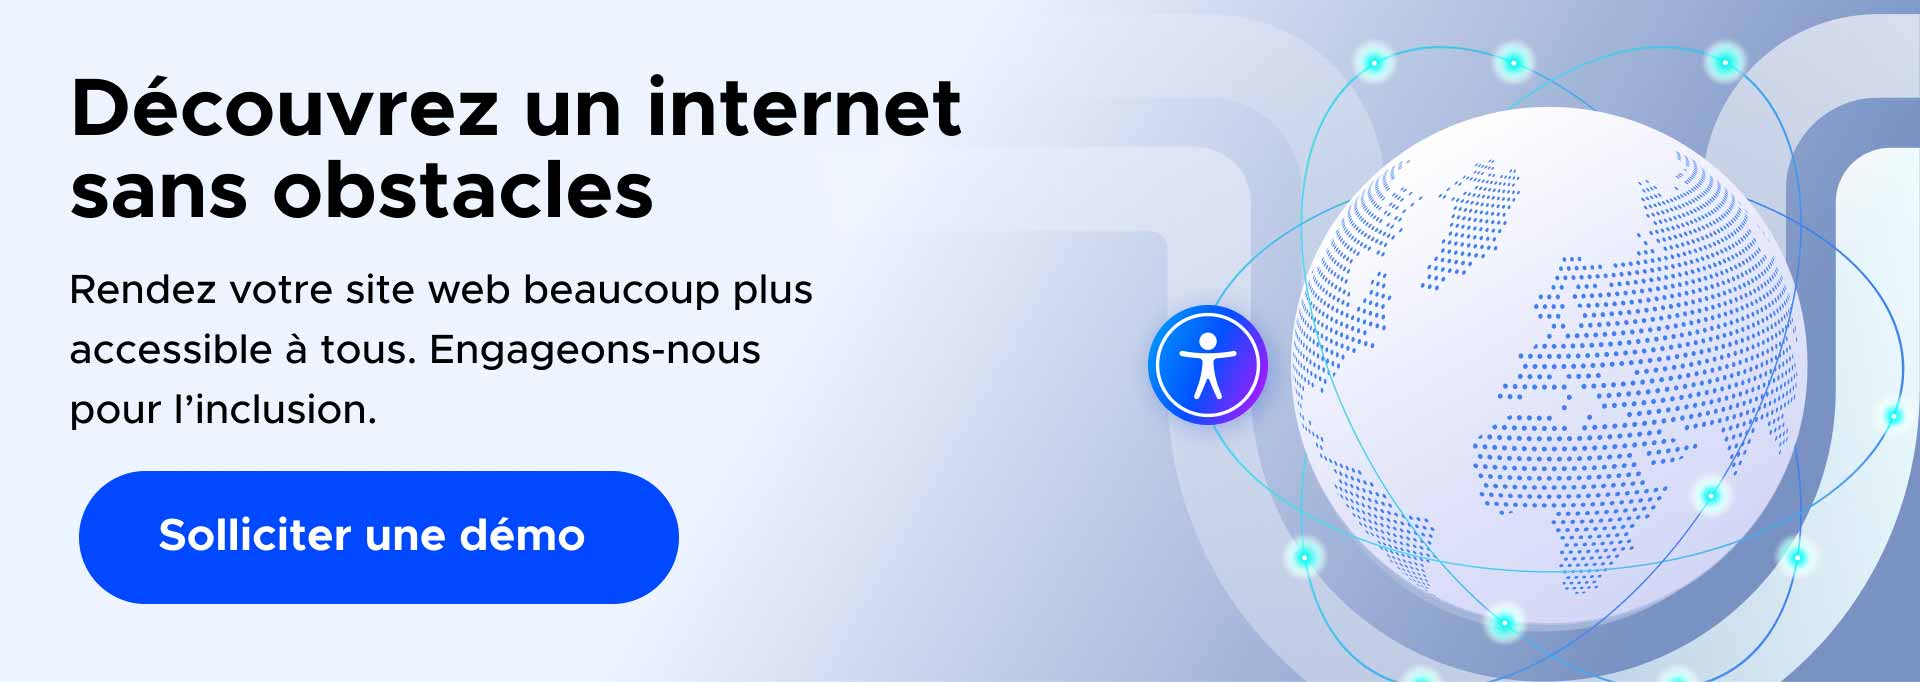 Banner en français avec un globe, texte sur l’accessibilité web, et icône d'inclusion